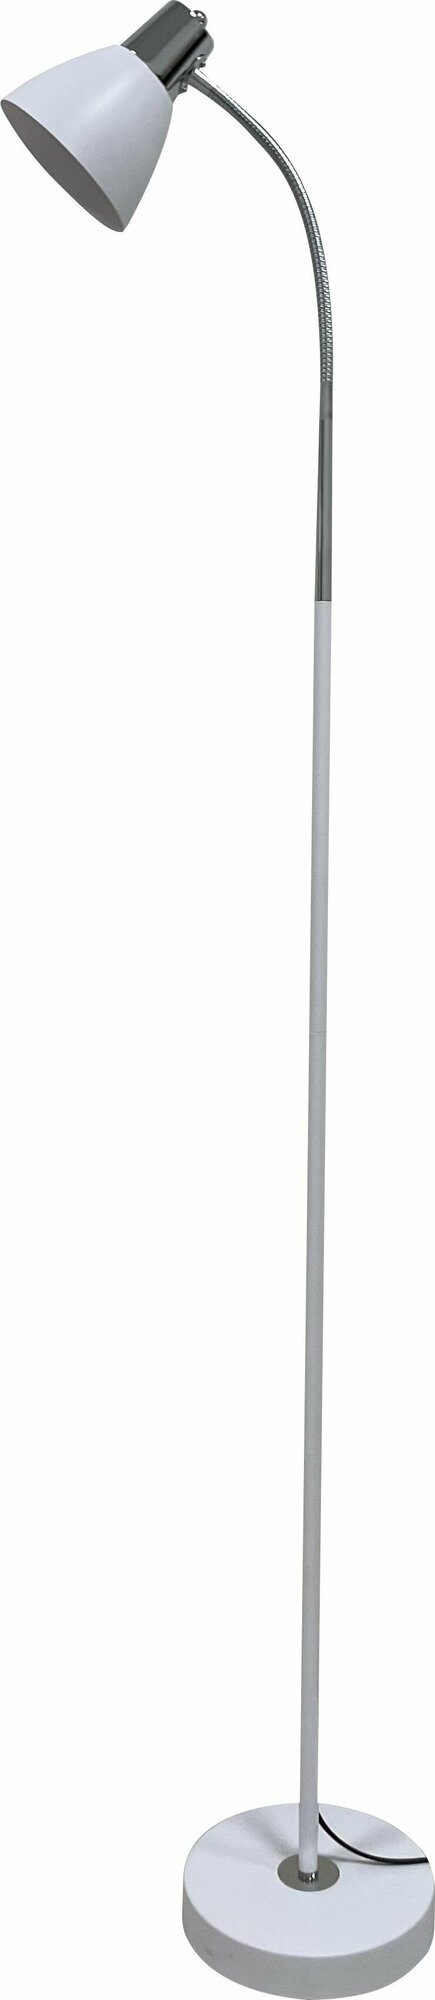 Напольный светильник торшер лофт Трансвит Руна, 40 Вт, 220 В, E27, белый